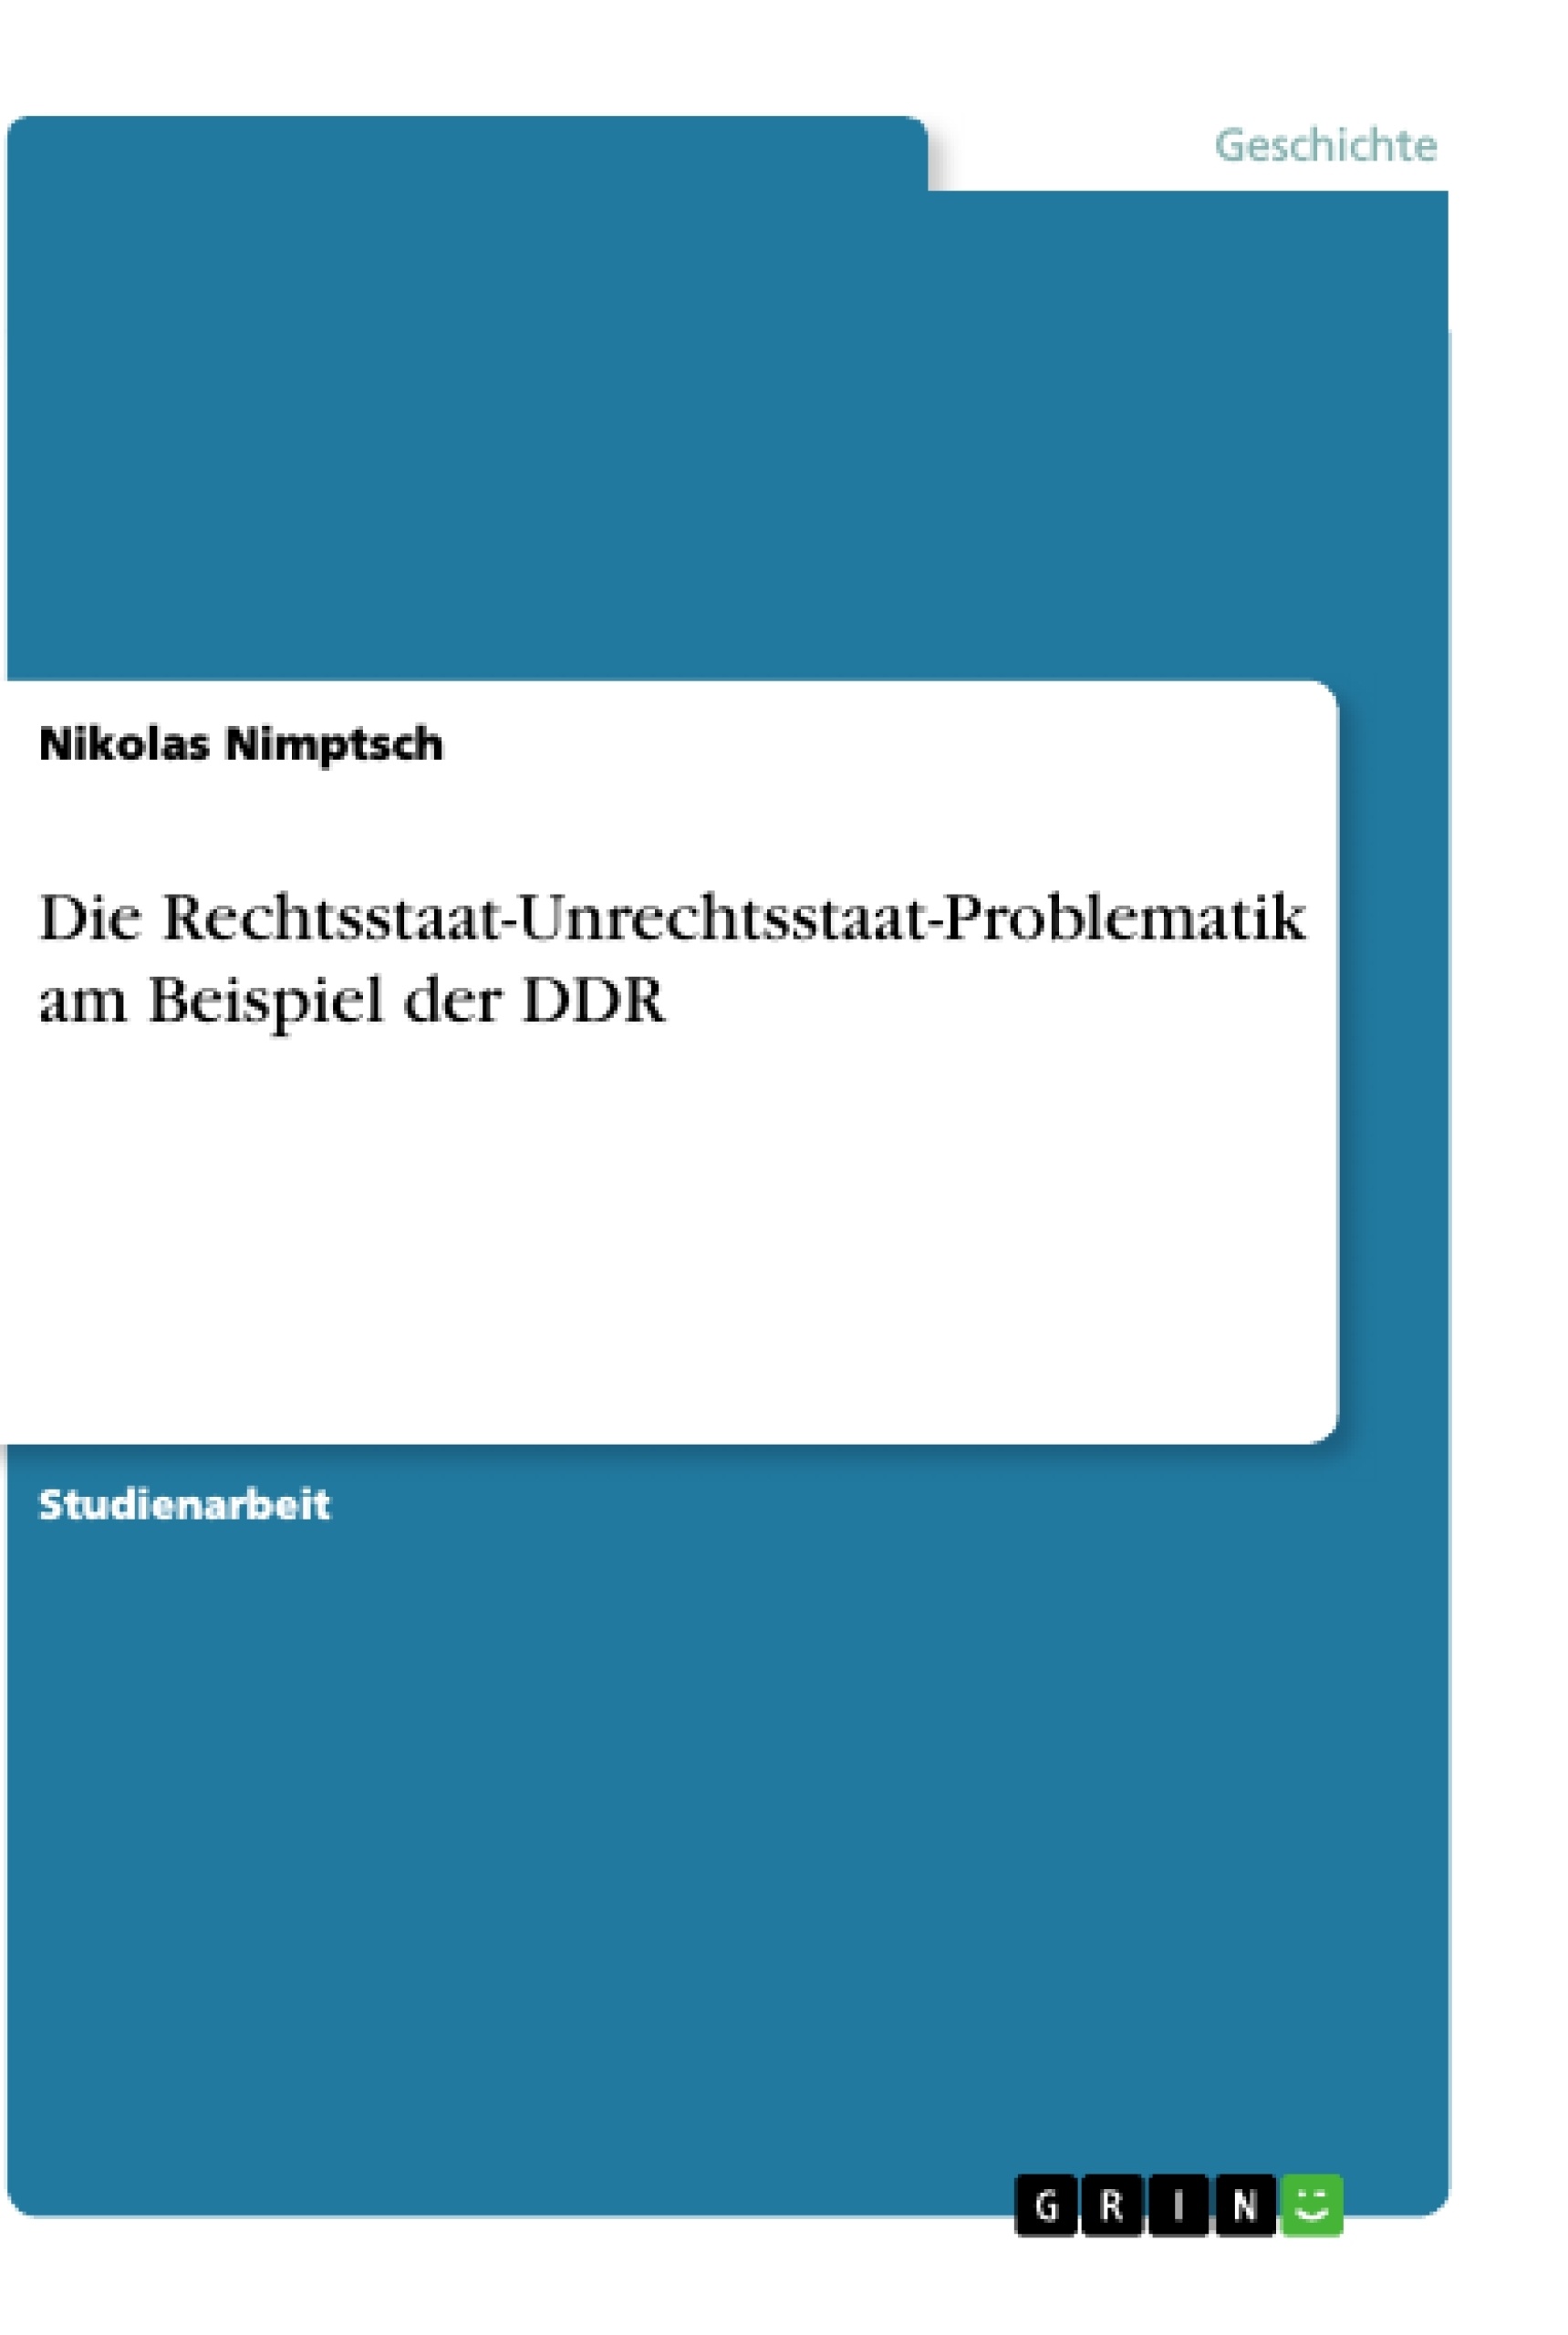 Title: Die Rechtsstaat-Unrechtsstaat-Problematik am Beispiel der DDR